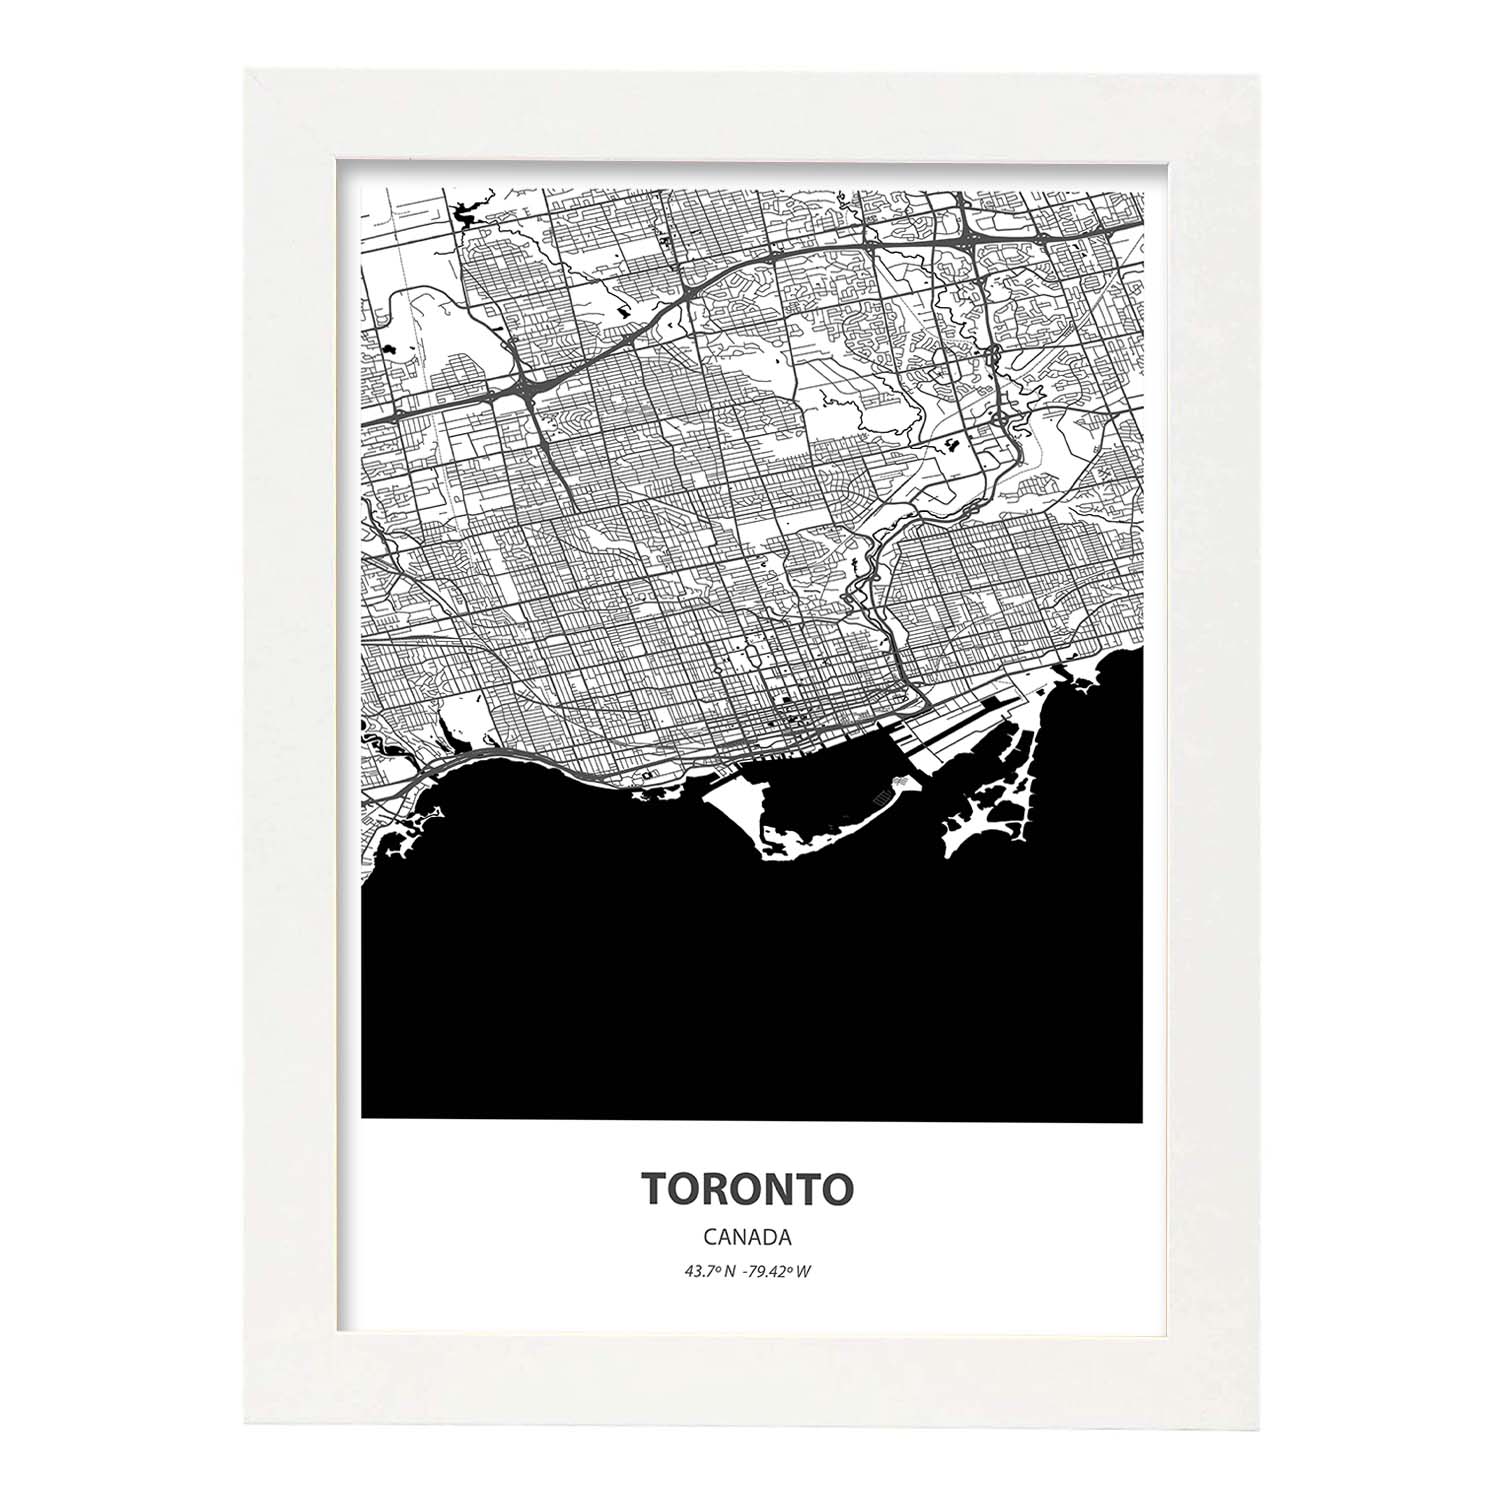 Poster con mapa de Toronto - Canada. Láminas de ciudades de Canada con mares y ríos en color negro.-Artwork-Nacnic-A4-Marco Blanco-Nacnic Estudio SL